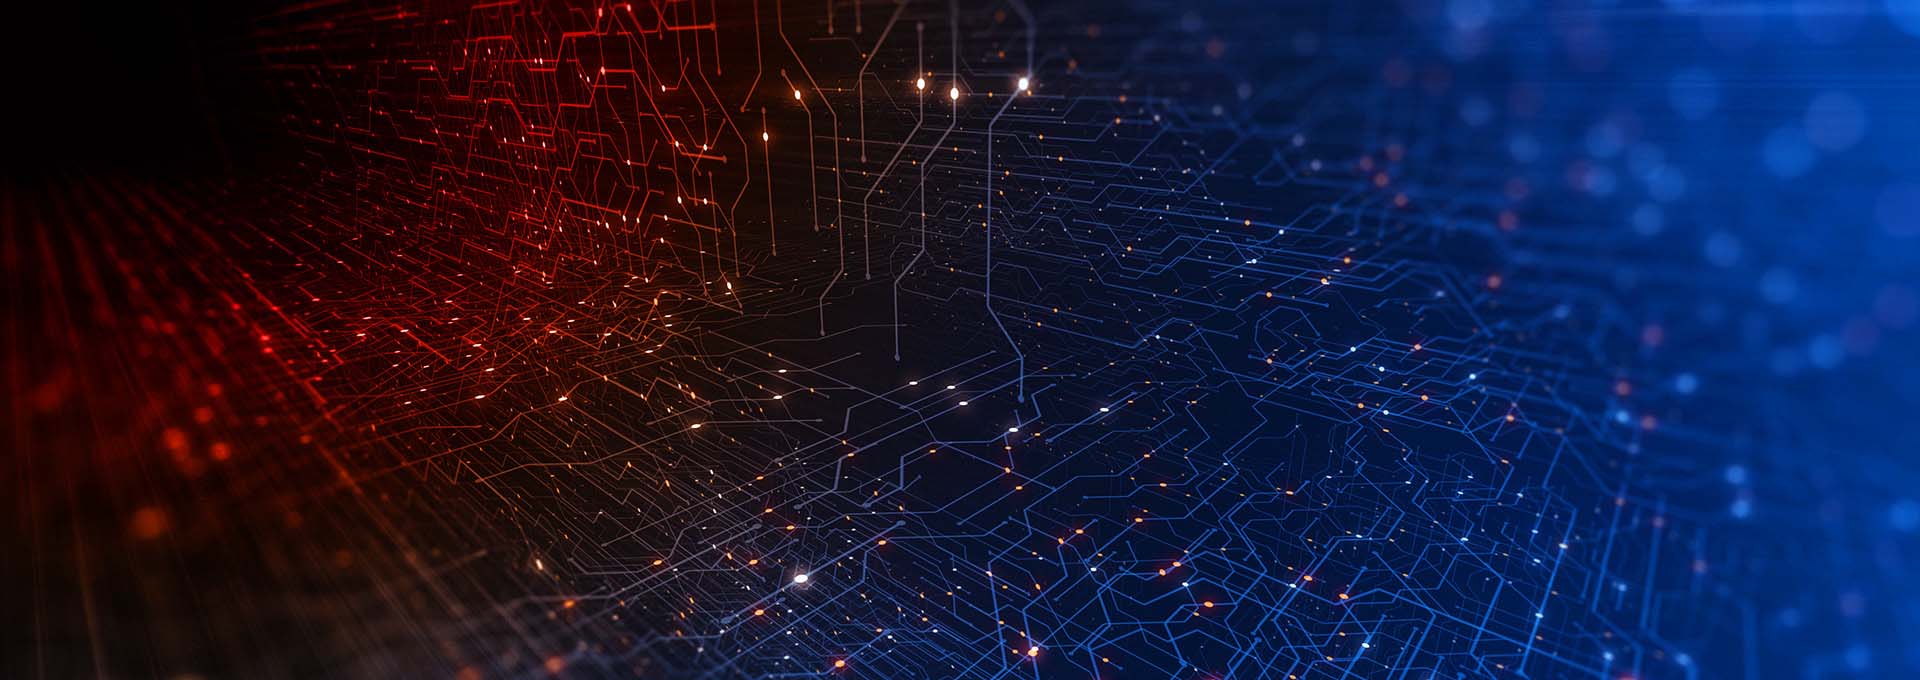 Et netværk af forbundne røde og blå prikker, som symboliserer den digitale verden i vores tilpasningssoftware Oasisnxt